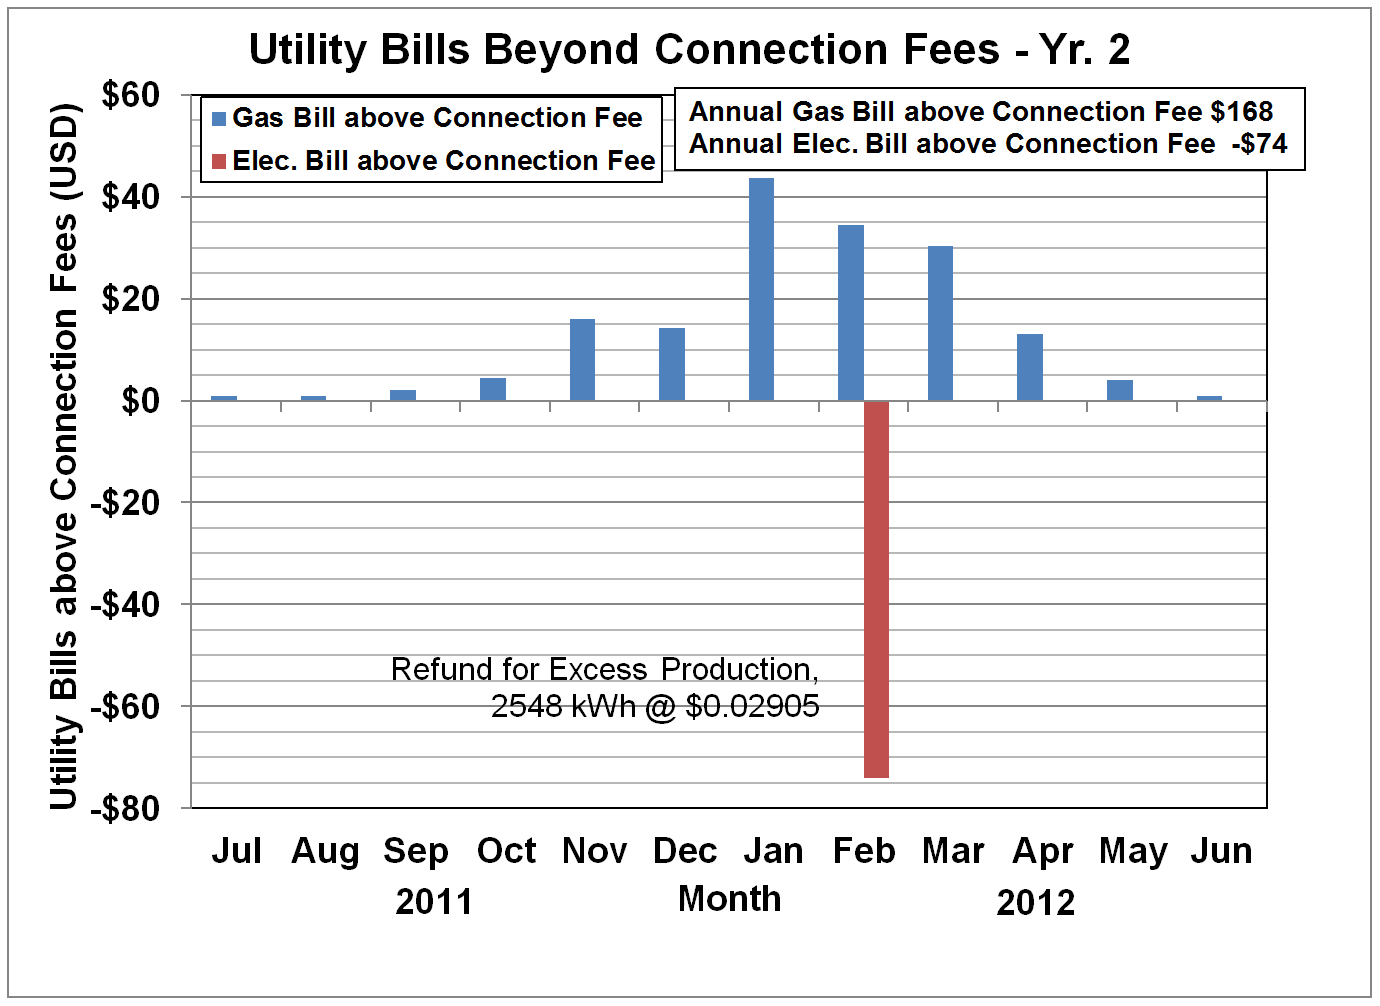 Utility Bills - Yr. 2